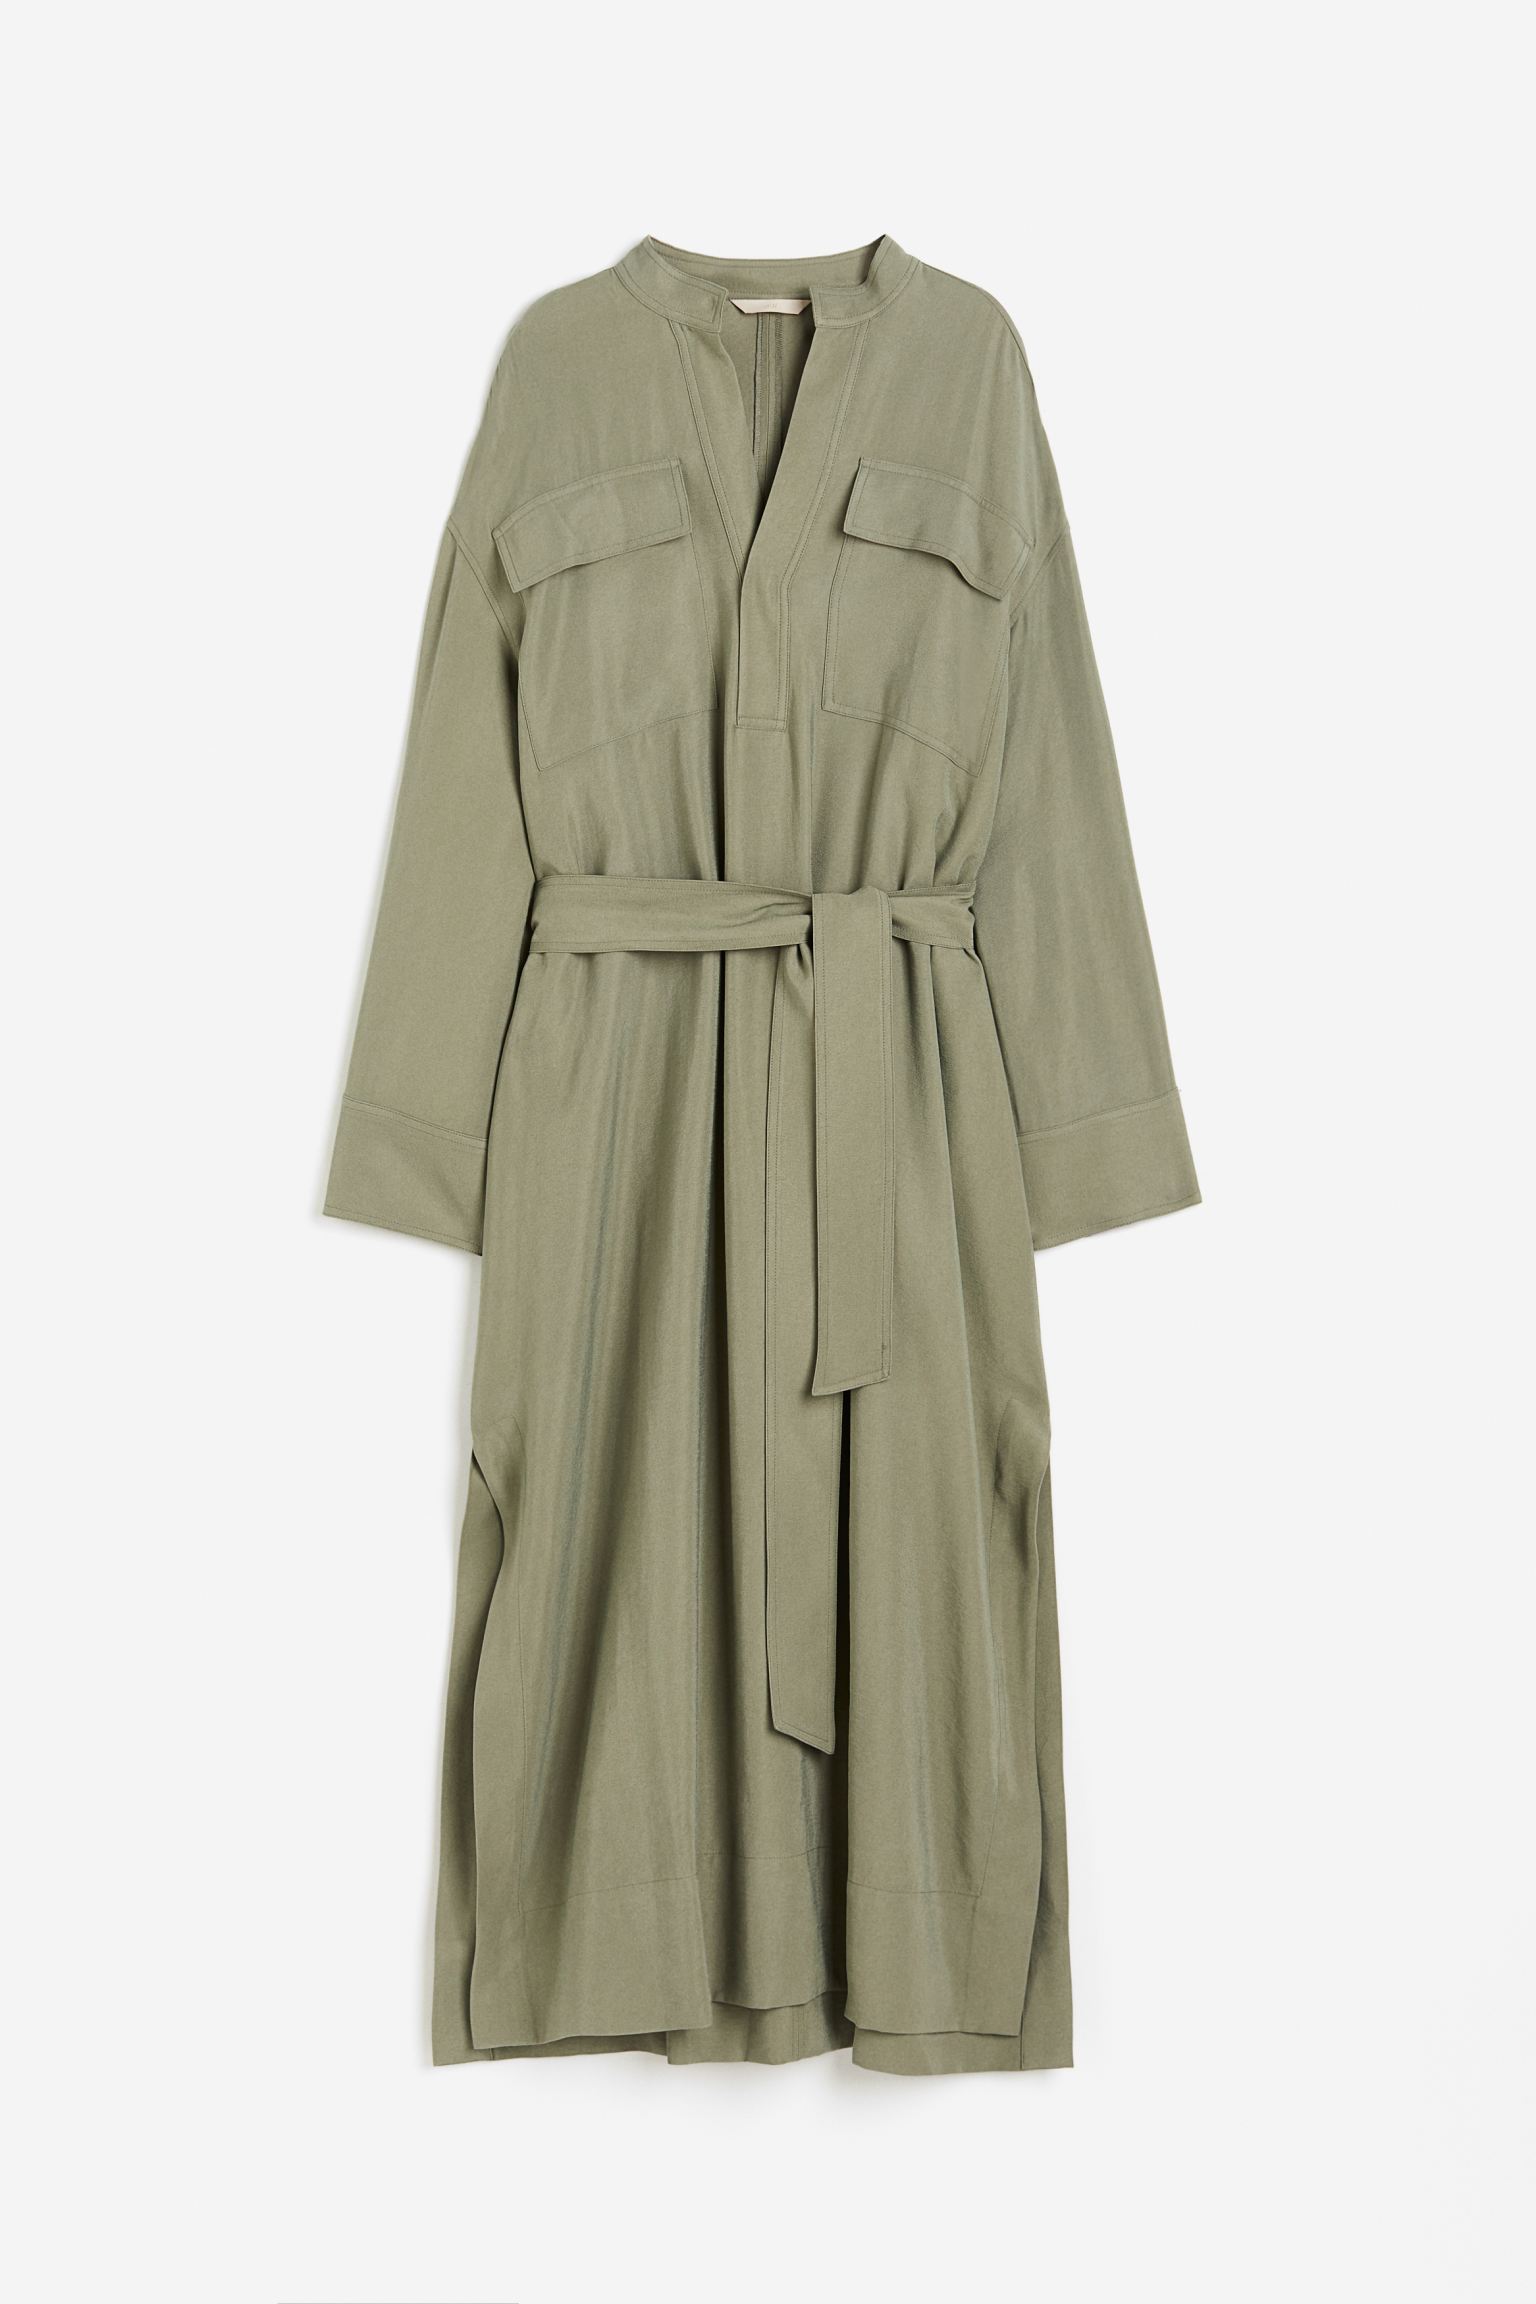 Платье H&M Modal-blend Utility, хаки платье длинное v образный вырез длинные рукава 46 серебристый